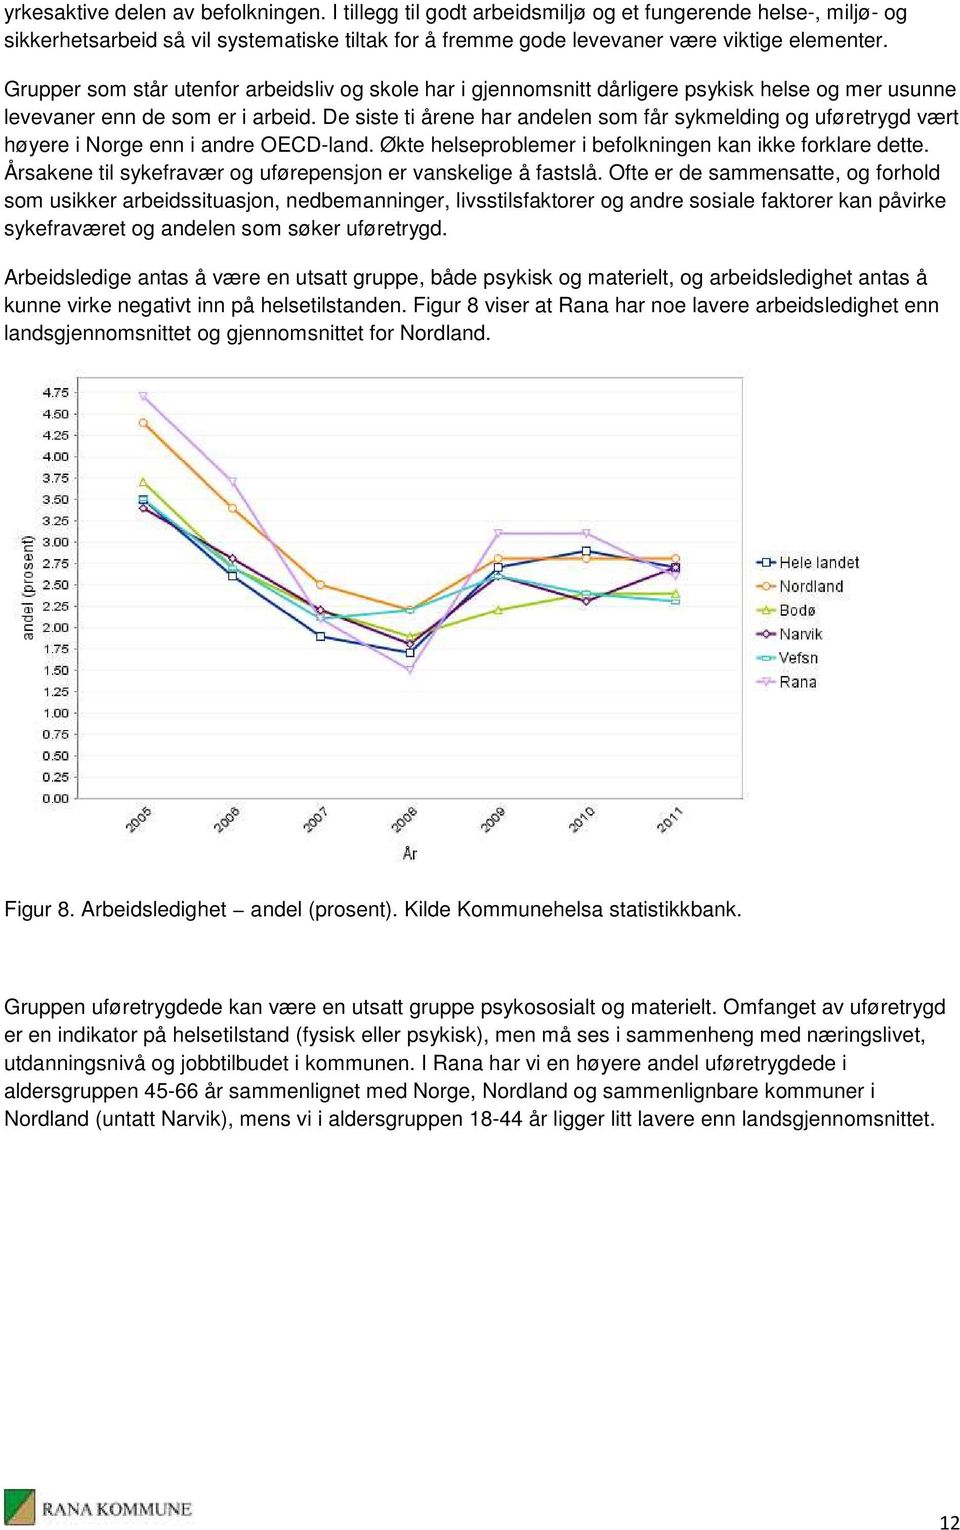 De siste ti årene har andelen som får sykmelding og uføretrygd vært høyere i Norge enn i andre OECD-land. Økte helseproblemer i befolkningen kan ikke forklare dette.